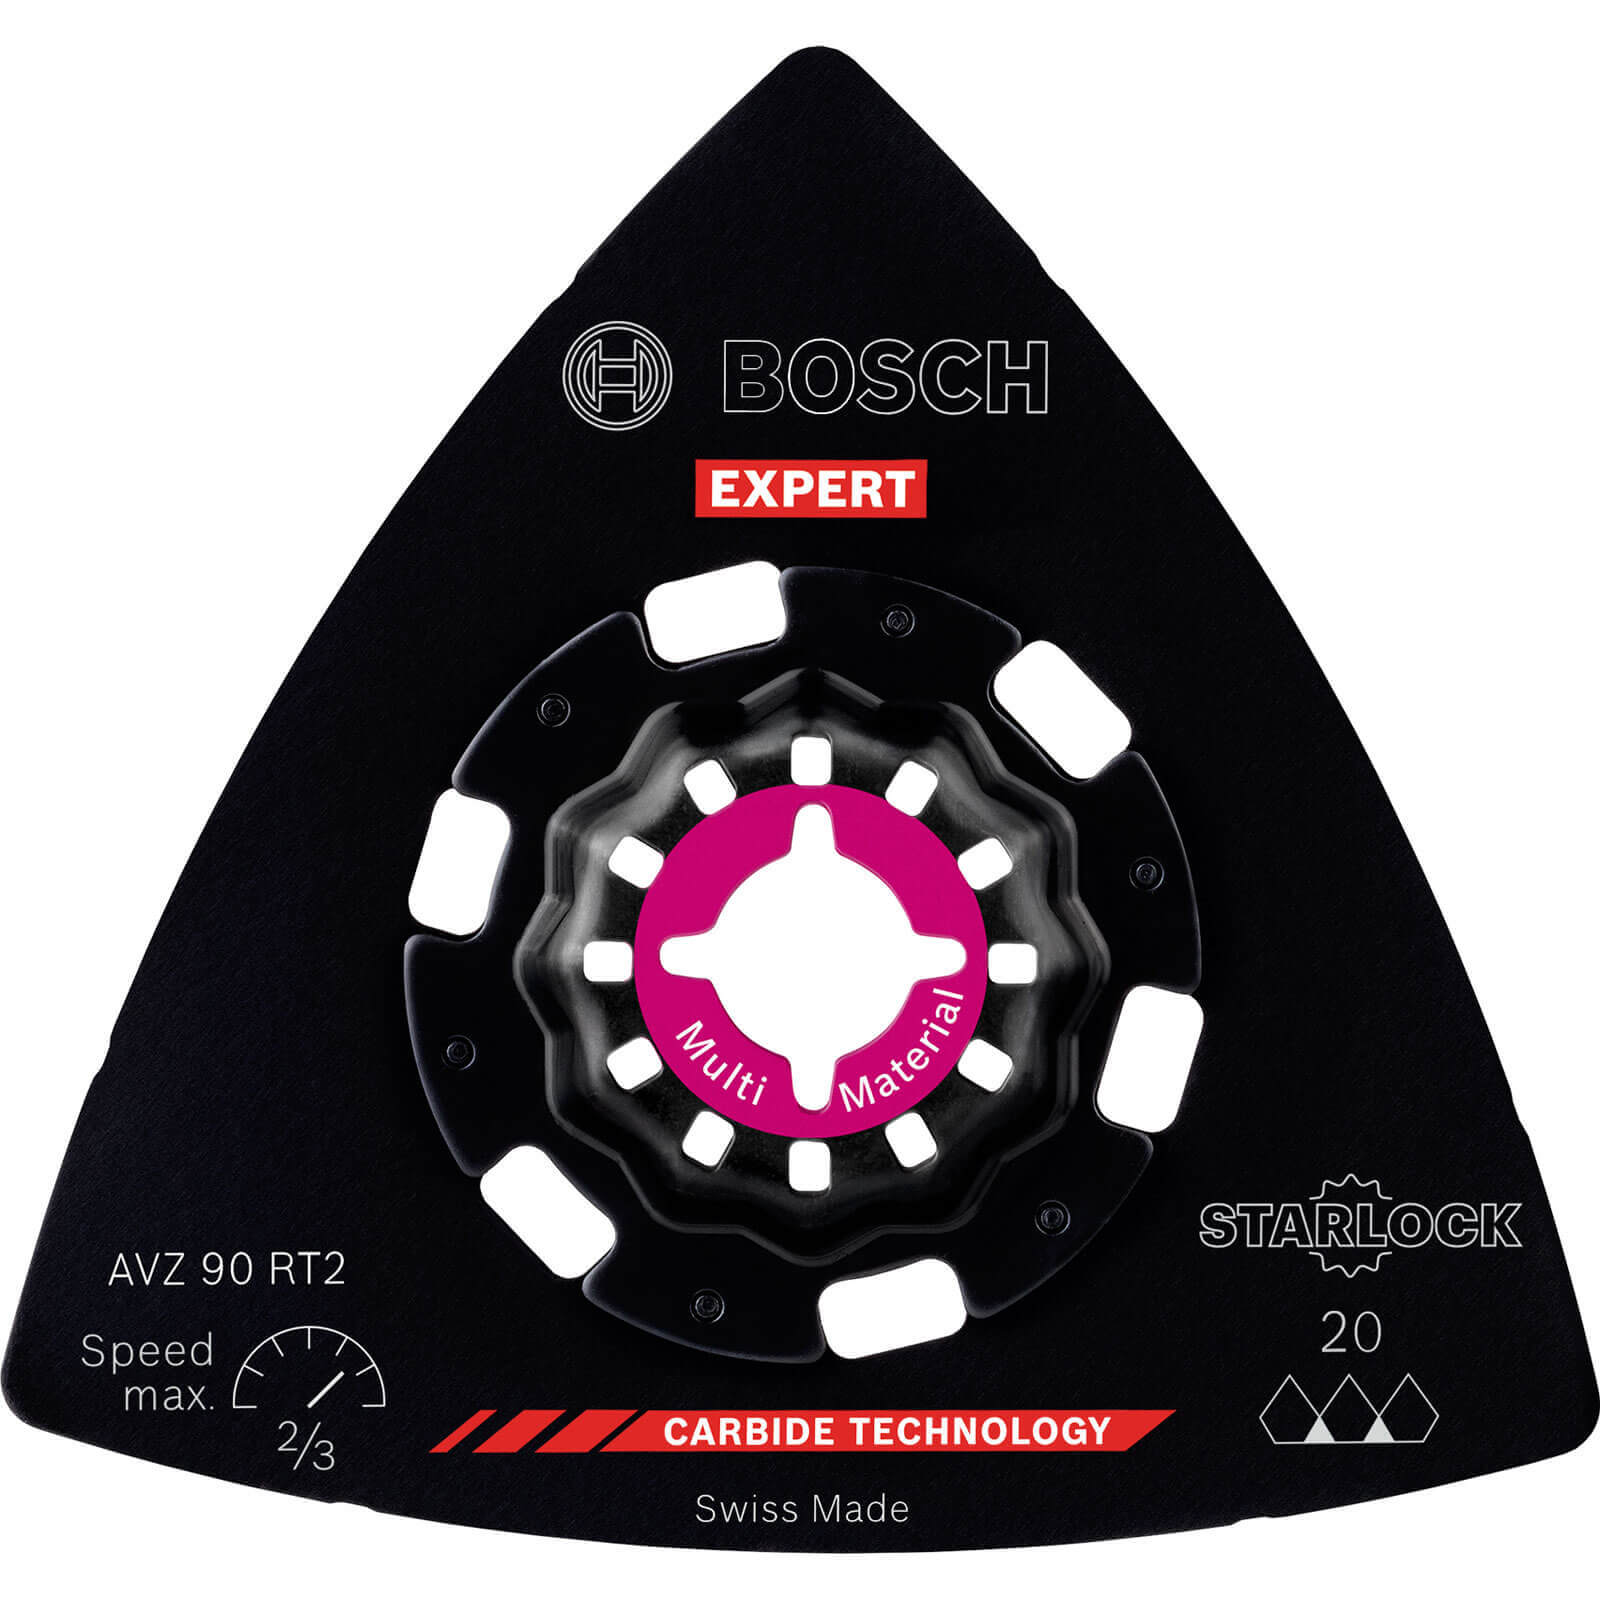 Bosch Expert AVZ 90 RT Starlock Oscillating Multi Tool Sanding Plate 90mm 20g Pack of 10